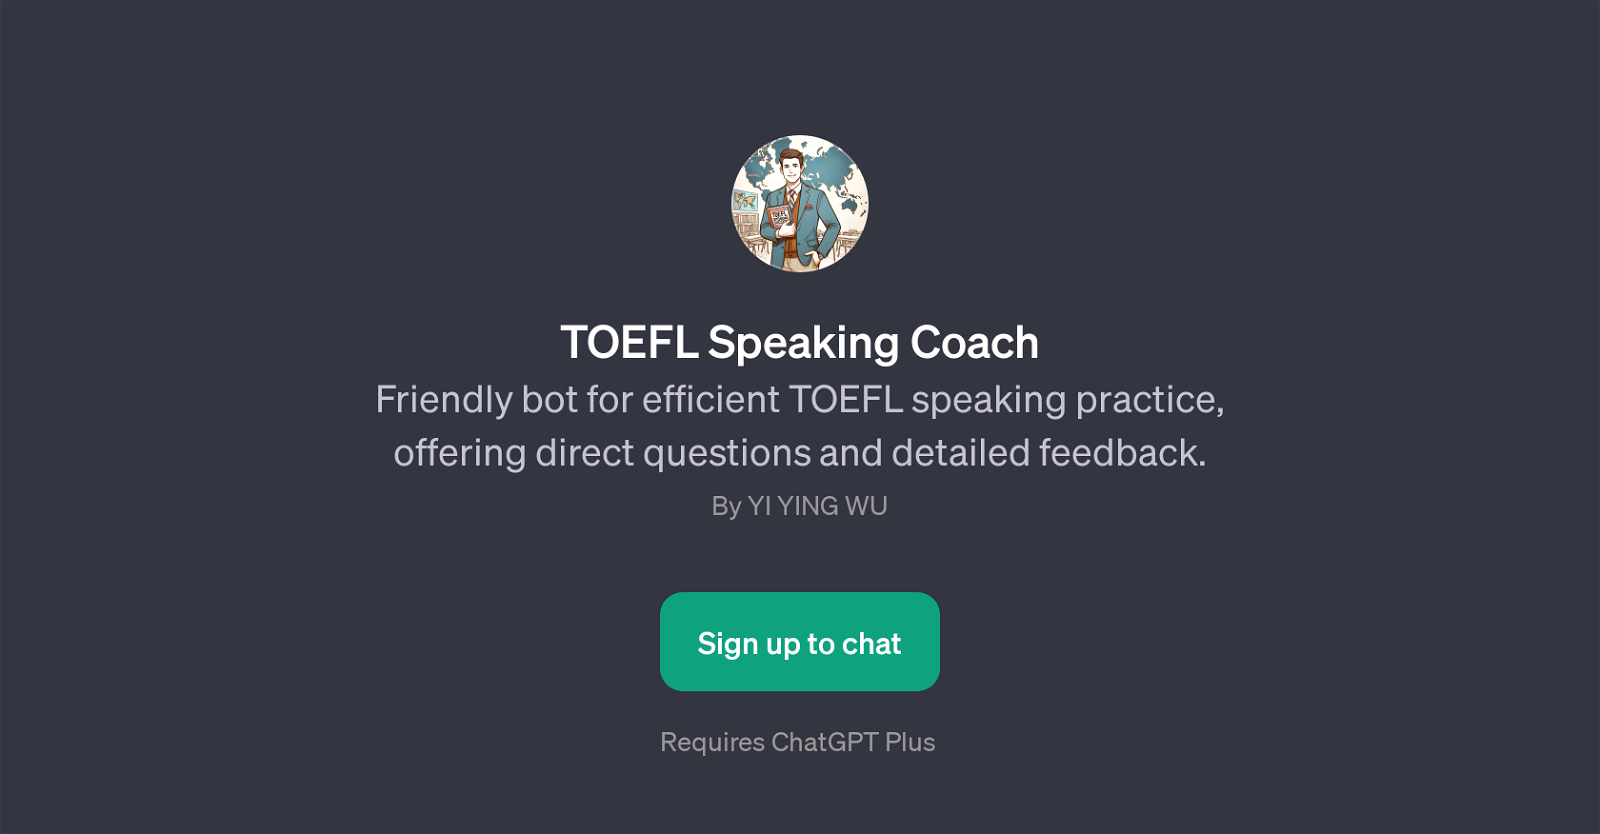 TOEFL Speaking Coach website